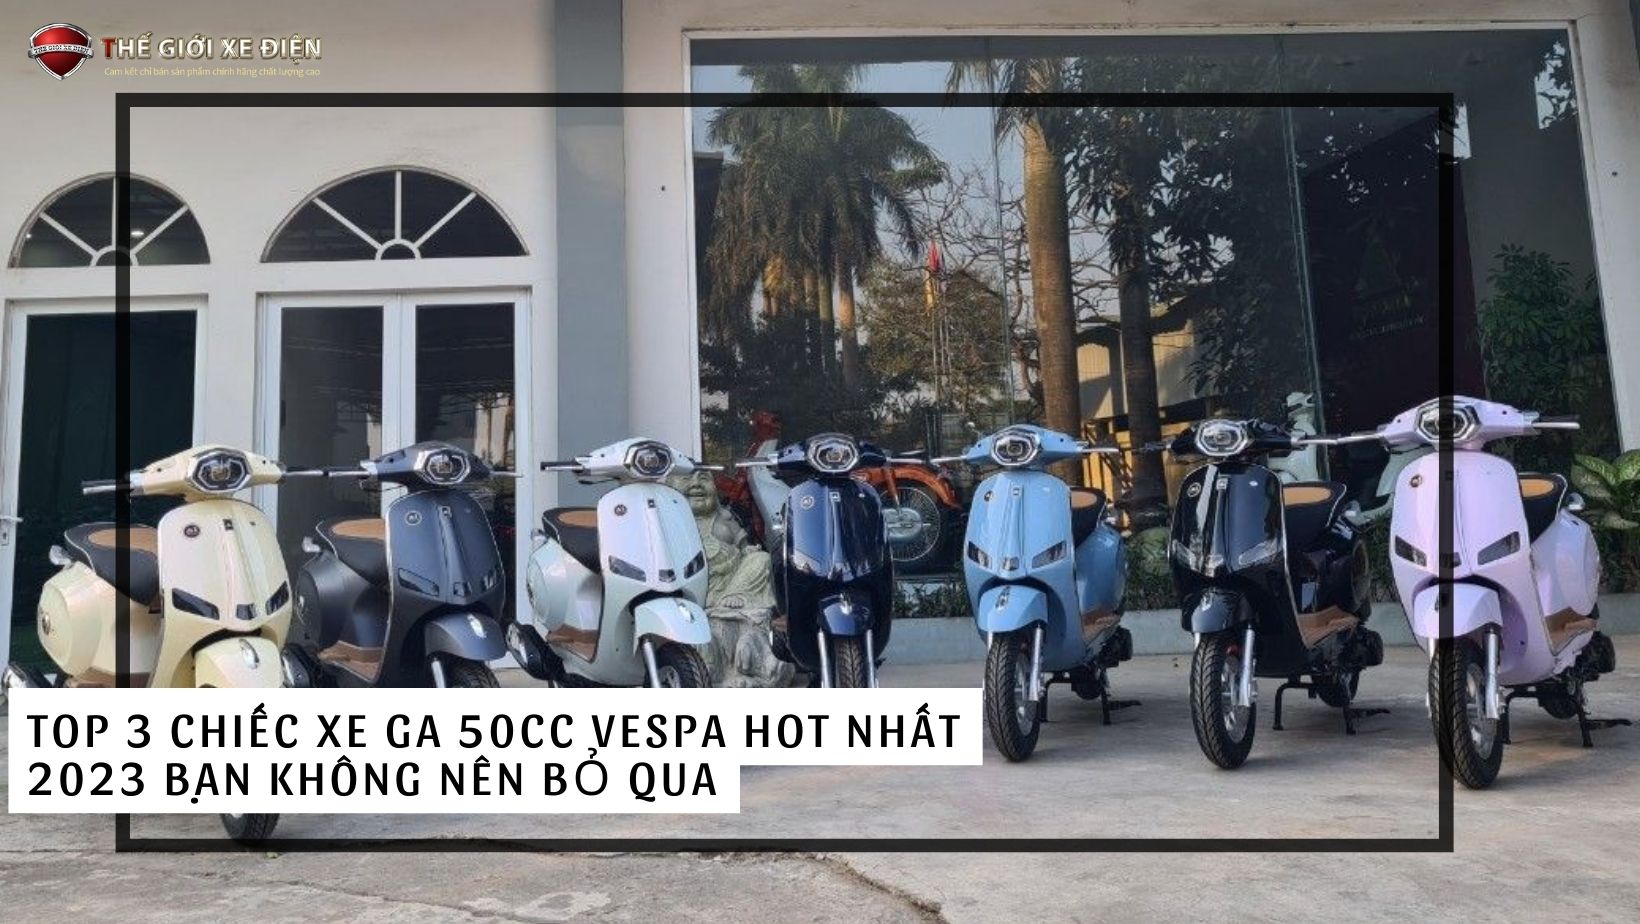 Top 3 chiếc xe ga 50cc Vespa hot nhất 2023 bạn không nên bỏ qua